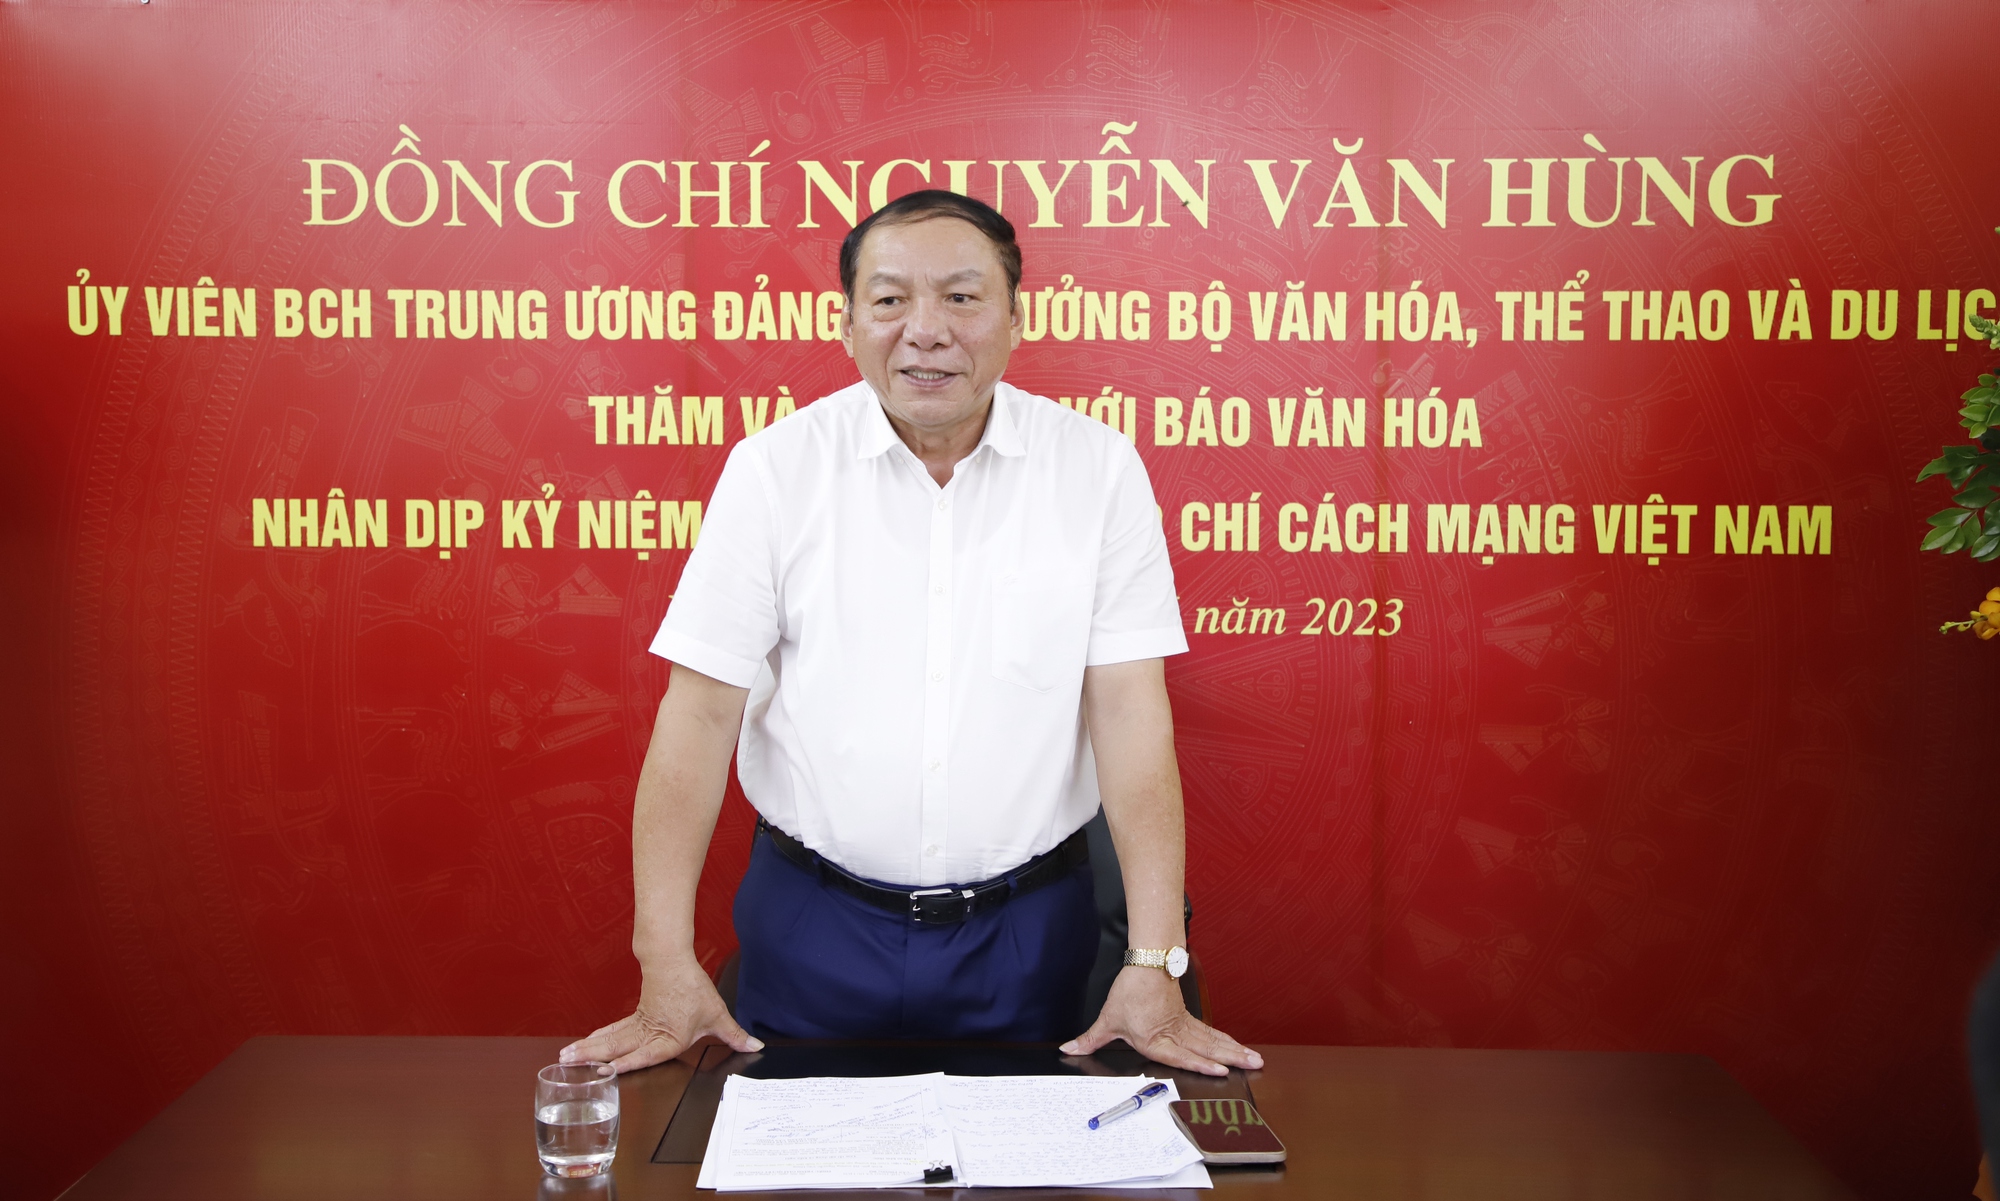 Bộ trưởng Nguyễn Văn Hùng: Báo chí phải đi trước, mở đường, tạo dư luận đồng thuận trong truyền thông chính sách - Ảnh 3.